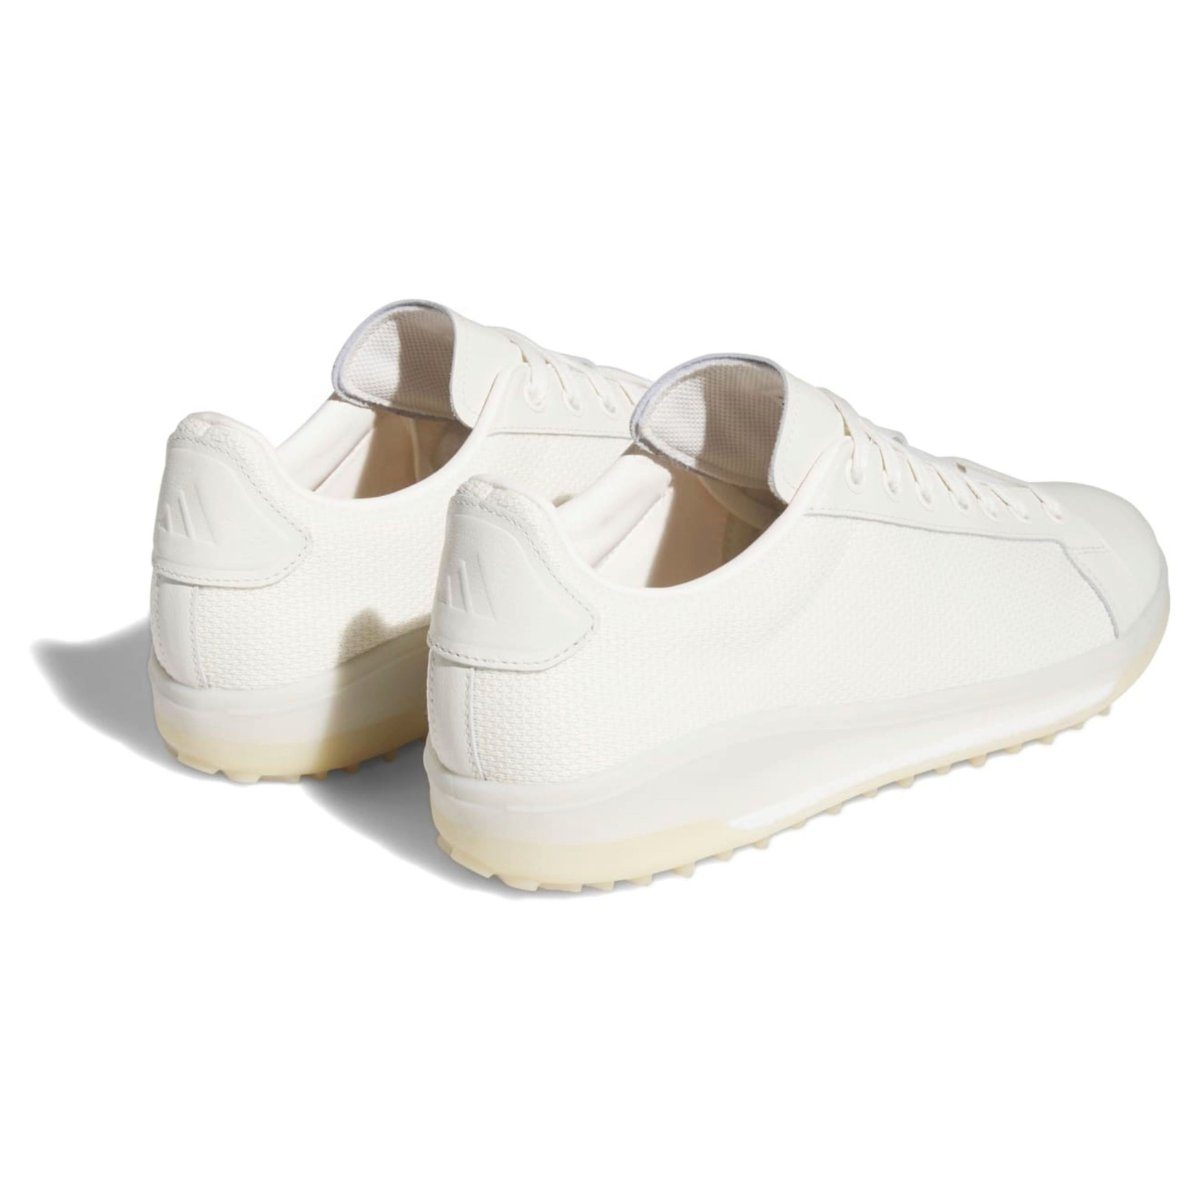 White/Alu/Beige adidas Golfschuh Sportswear Herren Go-To Gummiaußensohle Softspikes ohne Adidas